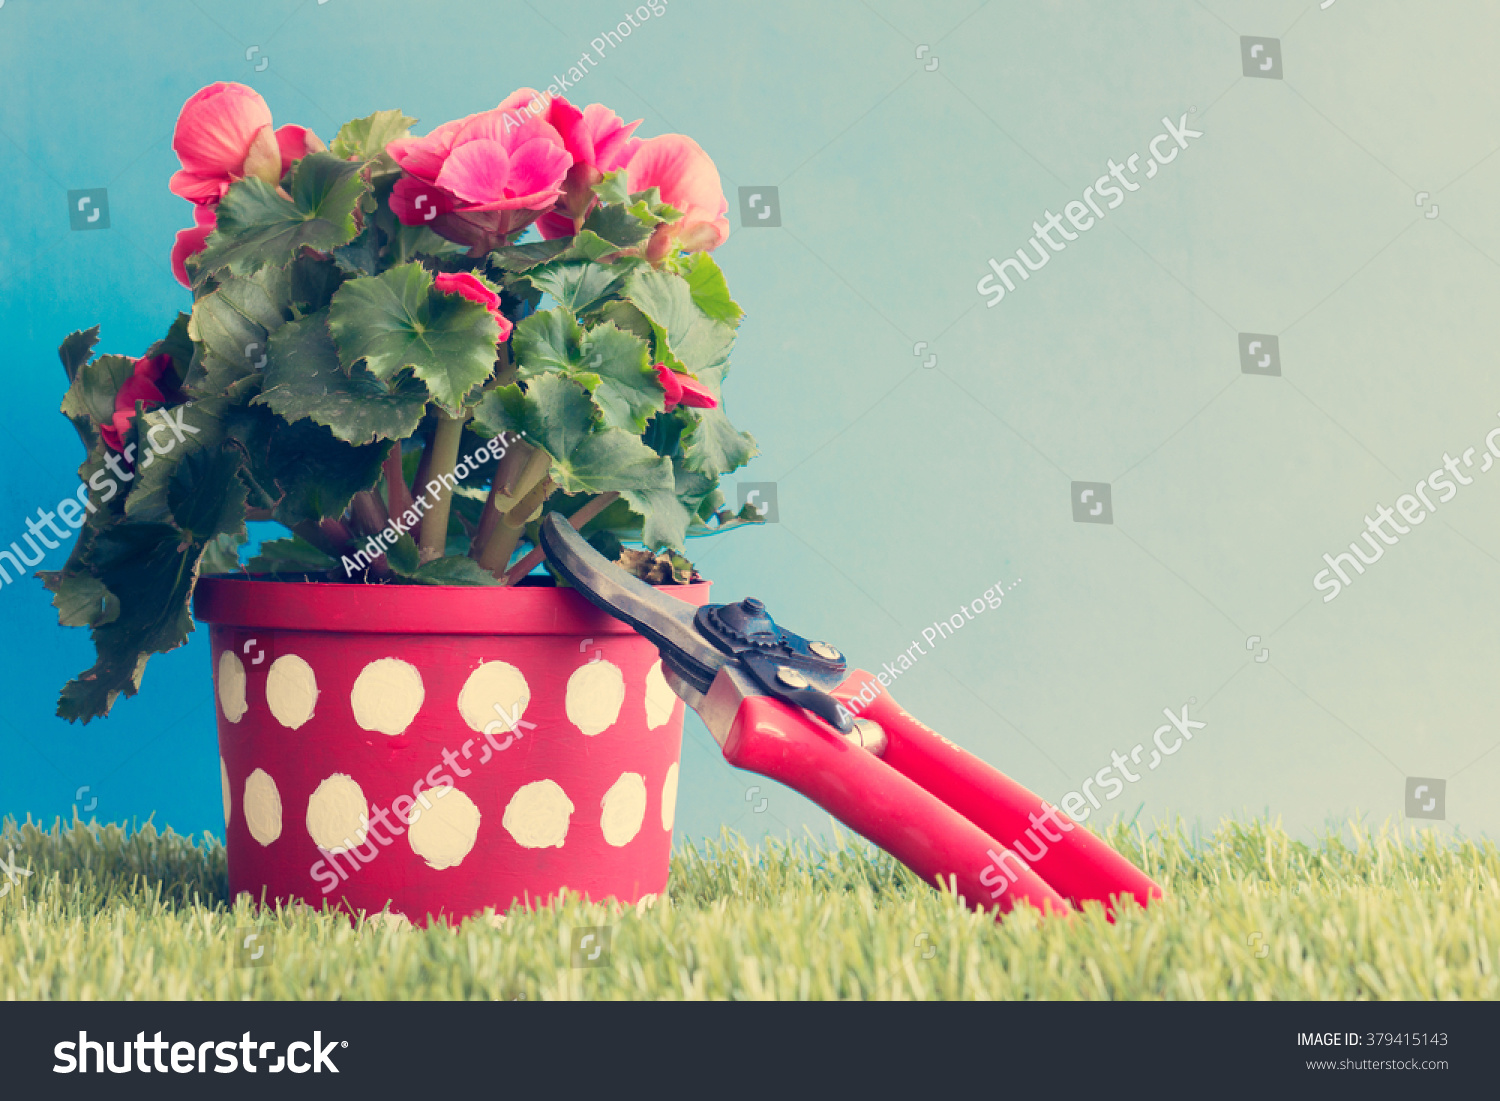 Polka-dots & Roses Planter